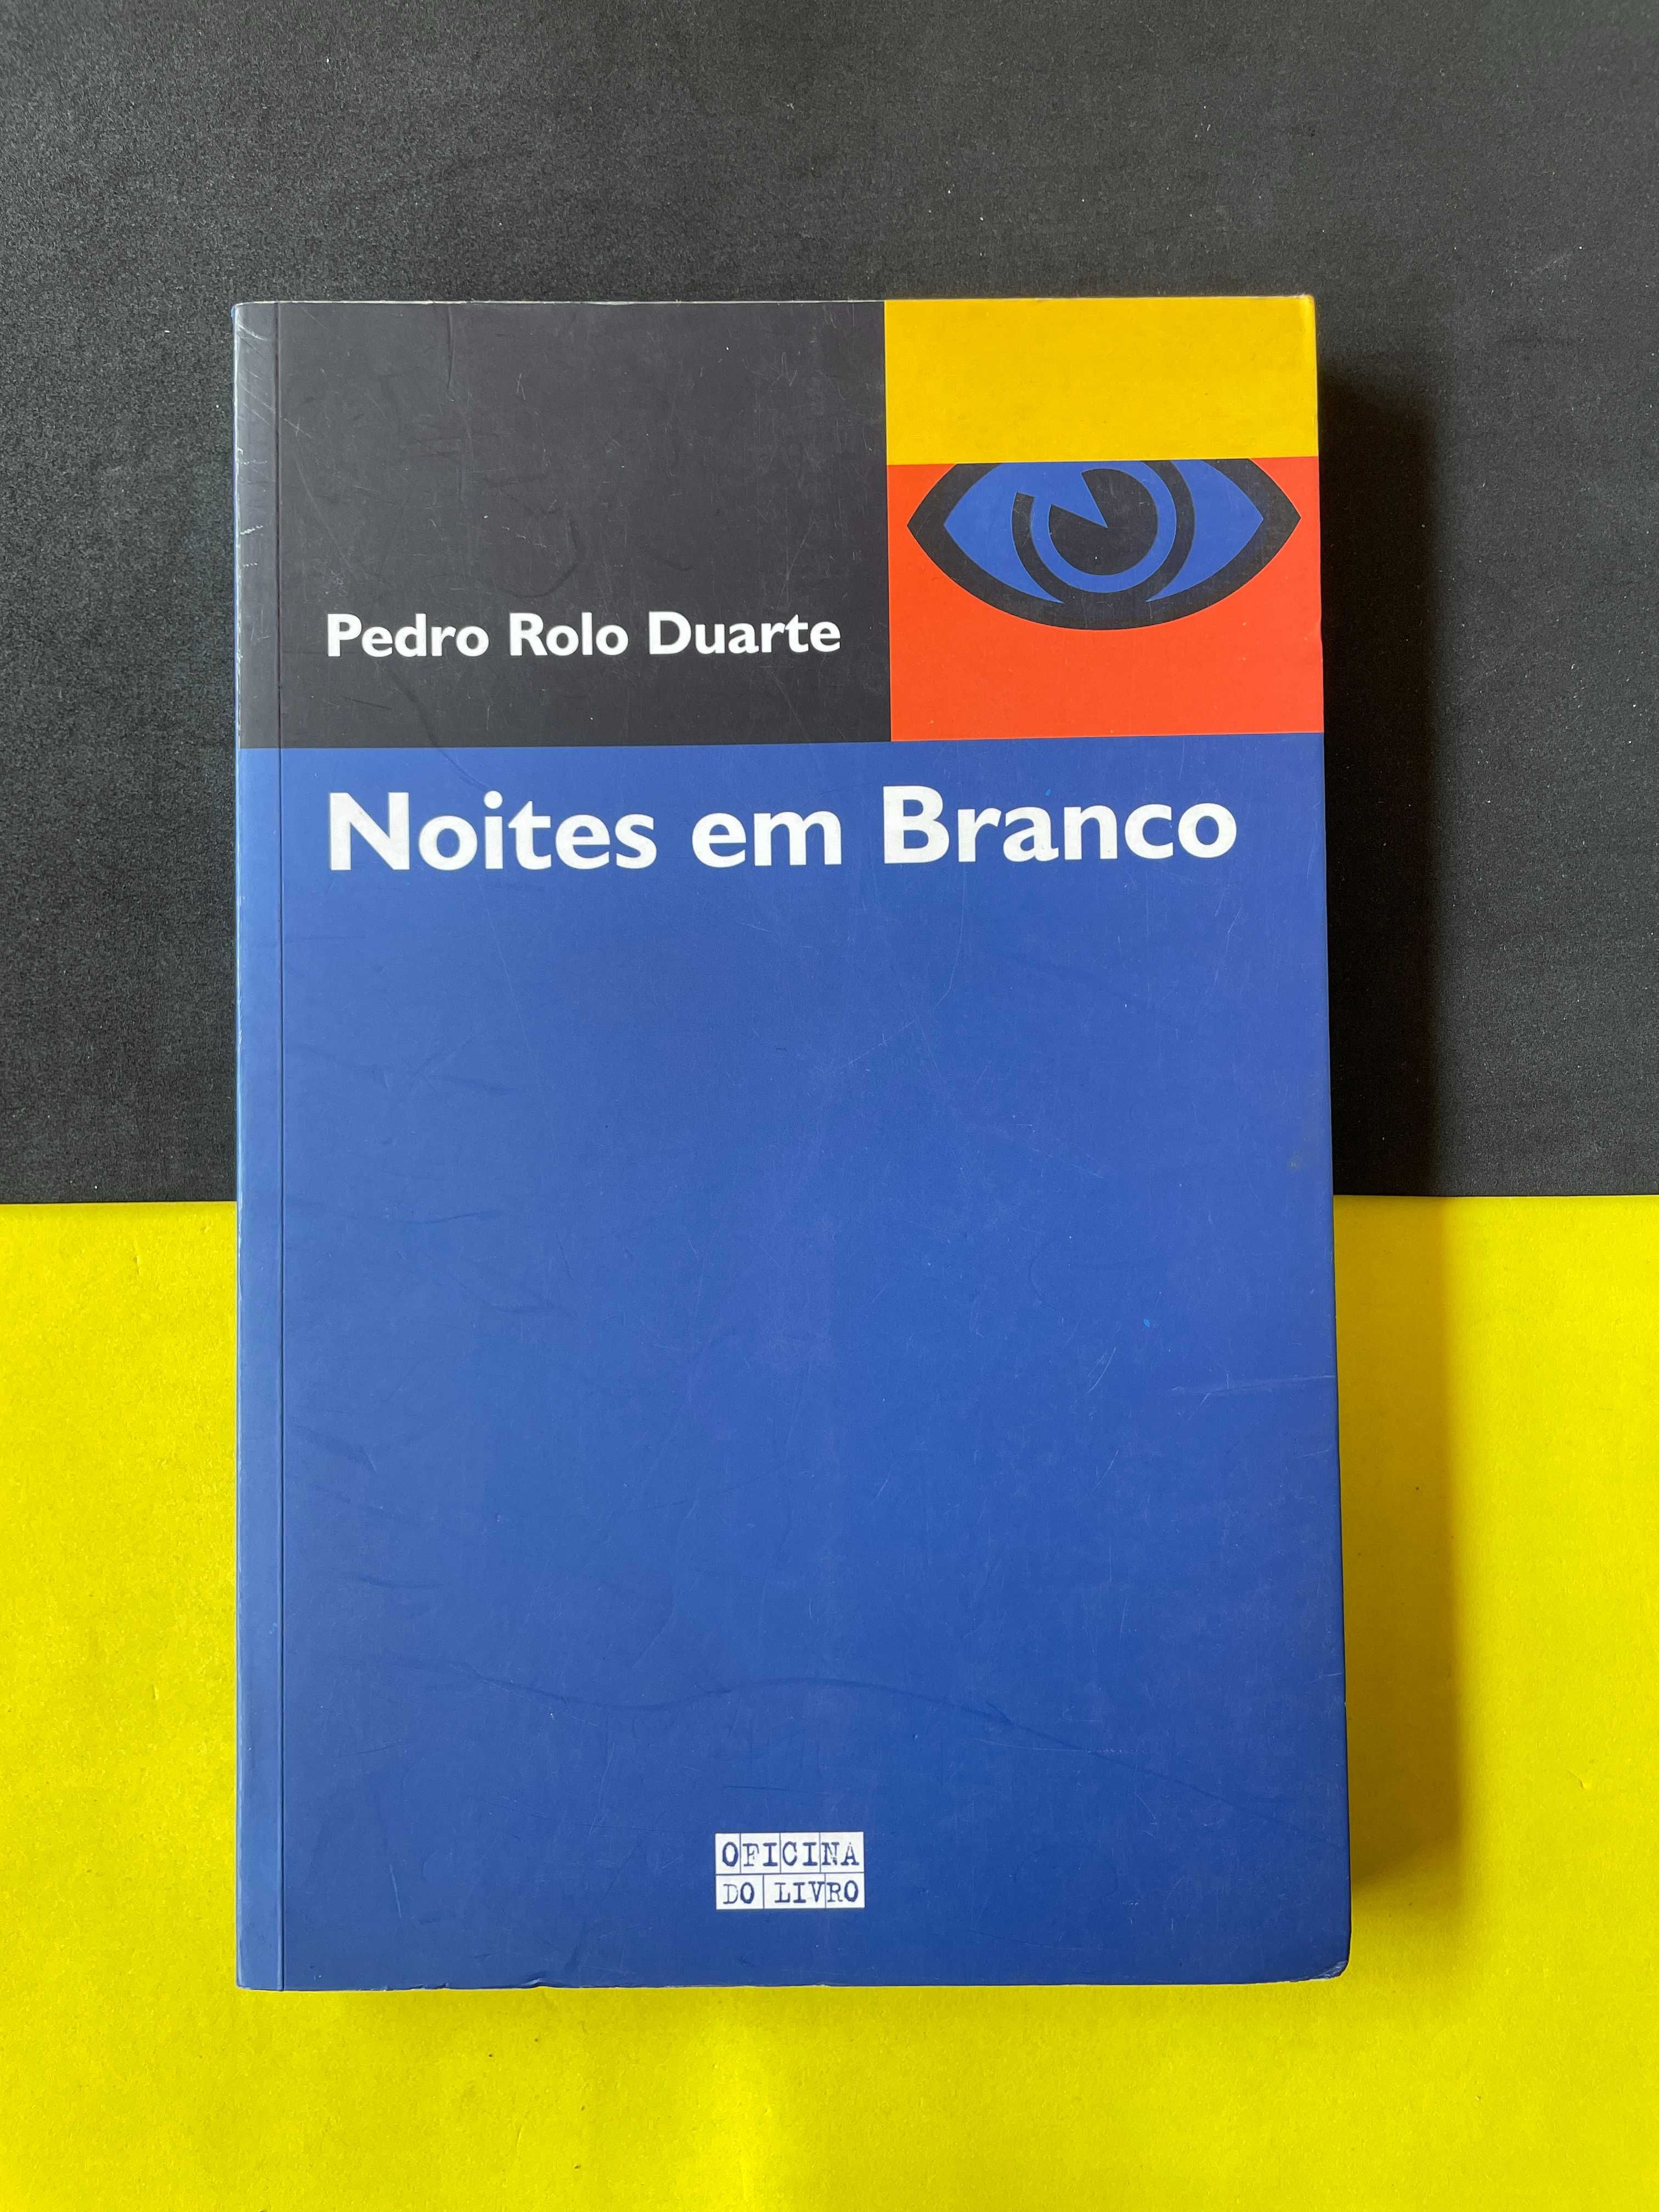 Pedro Rolo Duarte - Noites em Branco